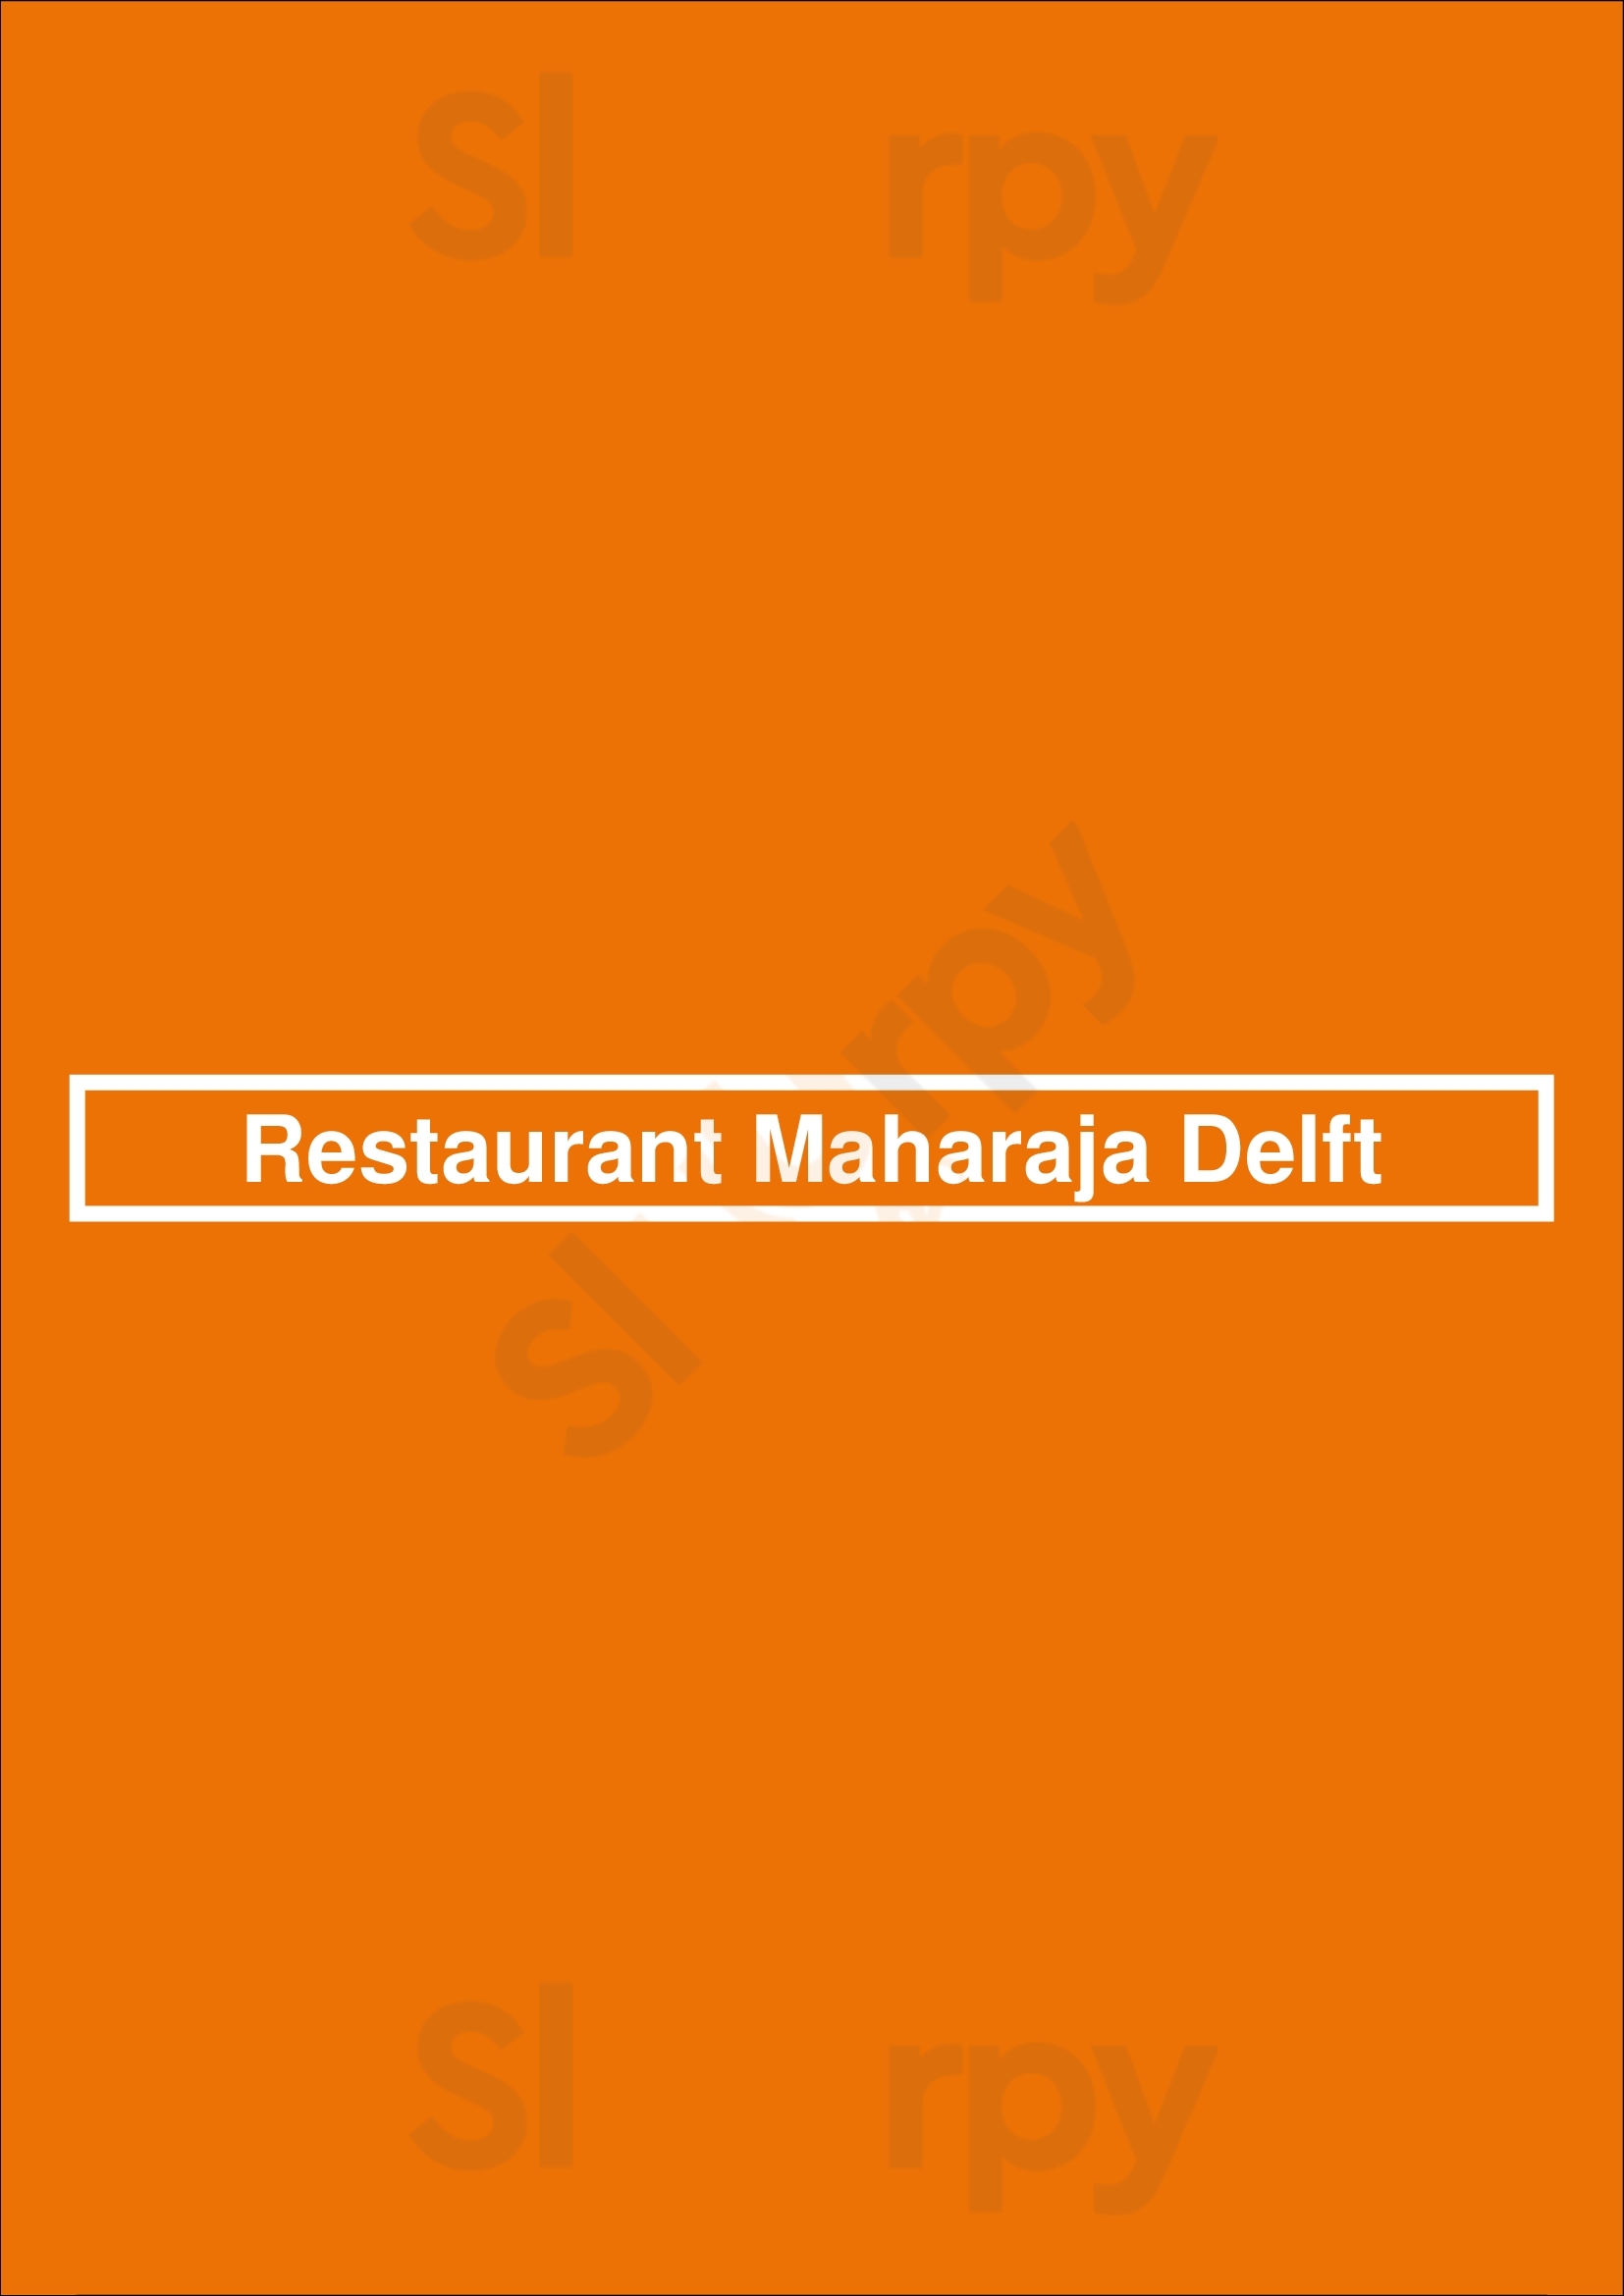 Restaurant Maharaja Delft Delft Menu - 1